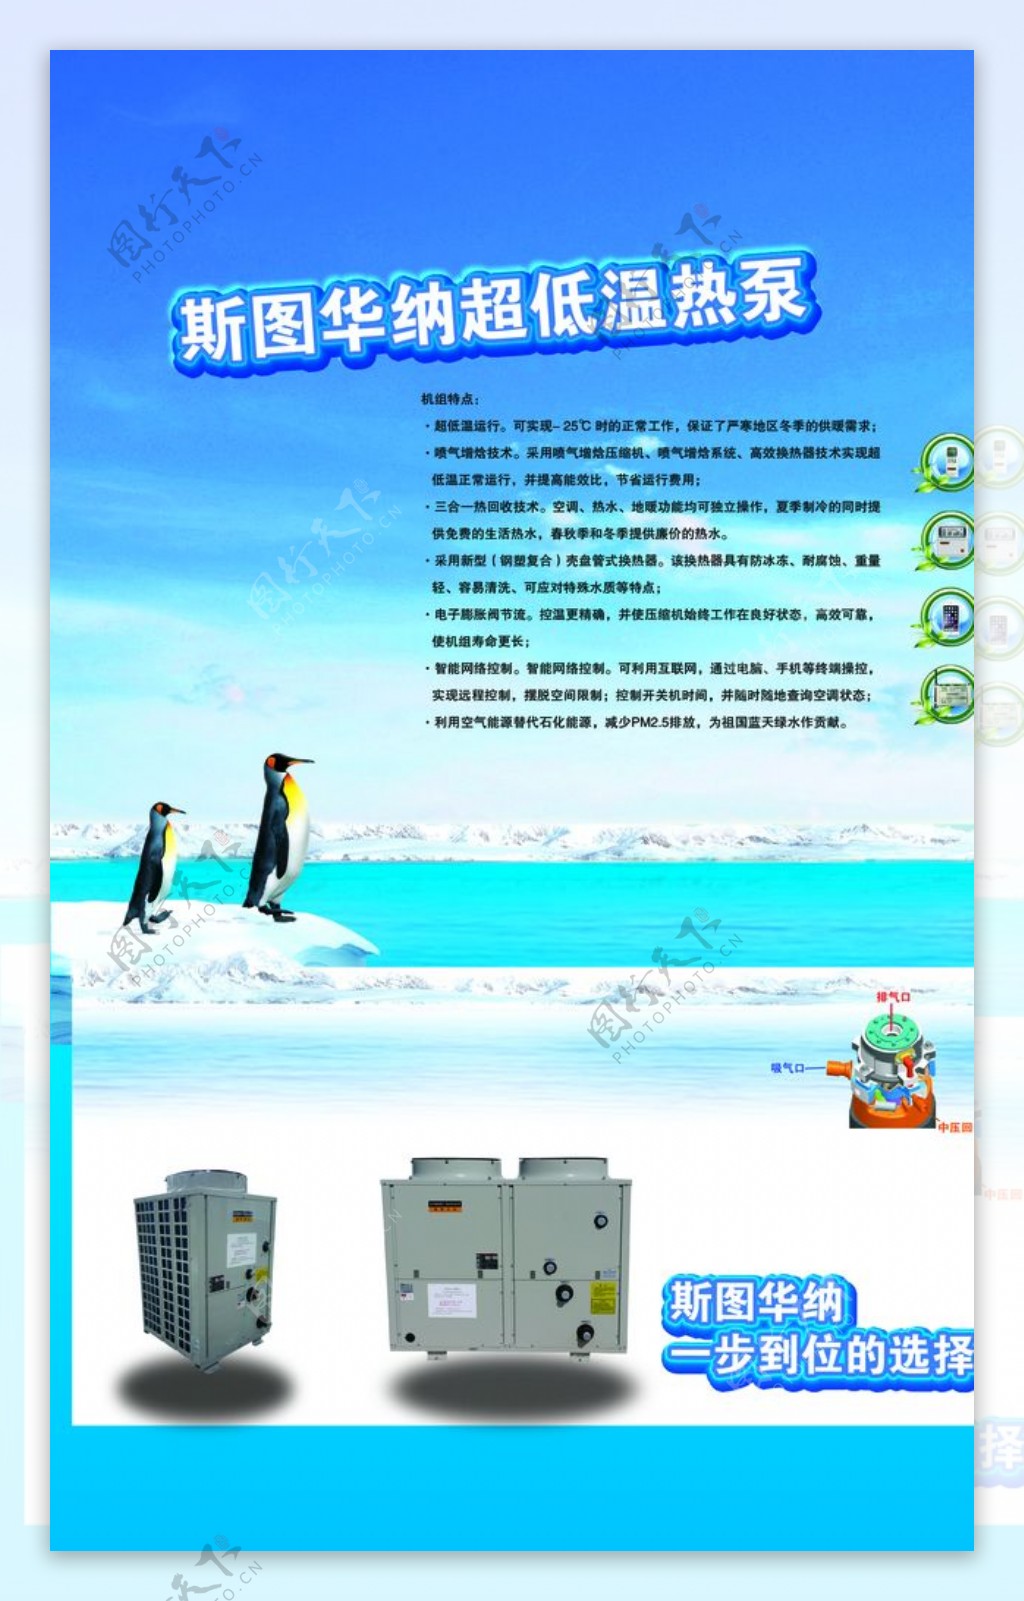 超低温热泵空调设计写真喷绘广告